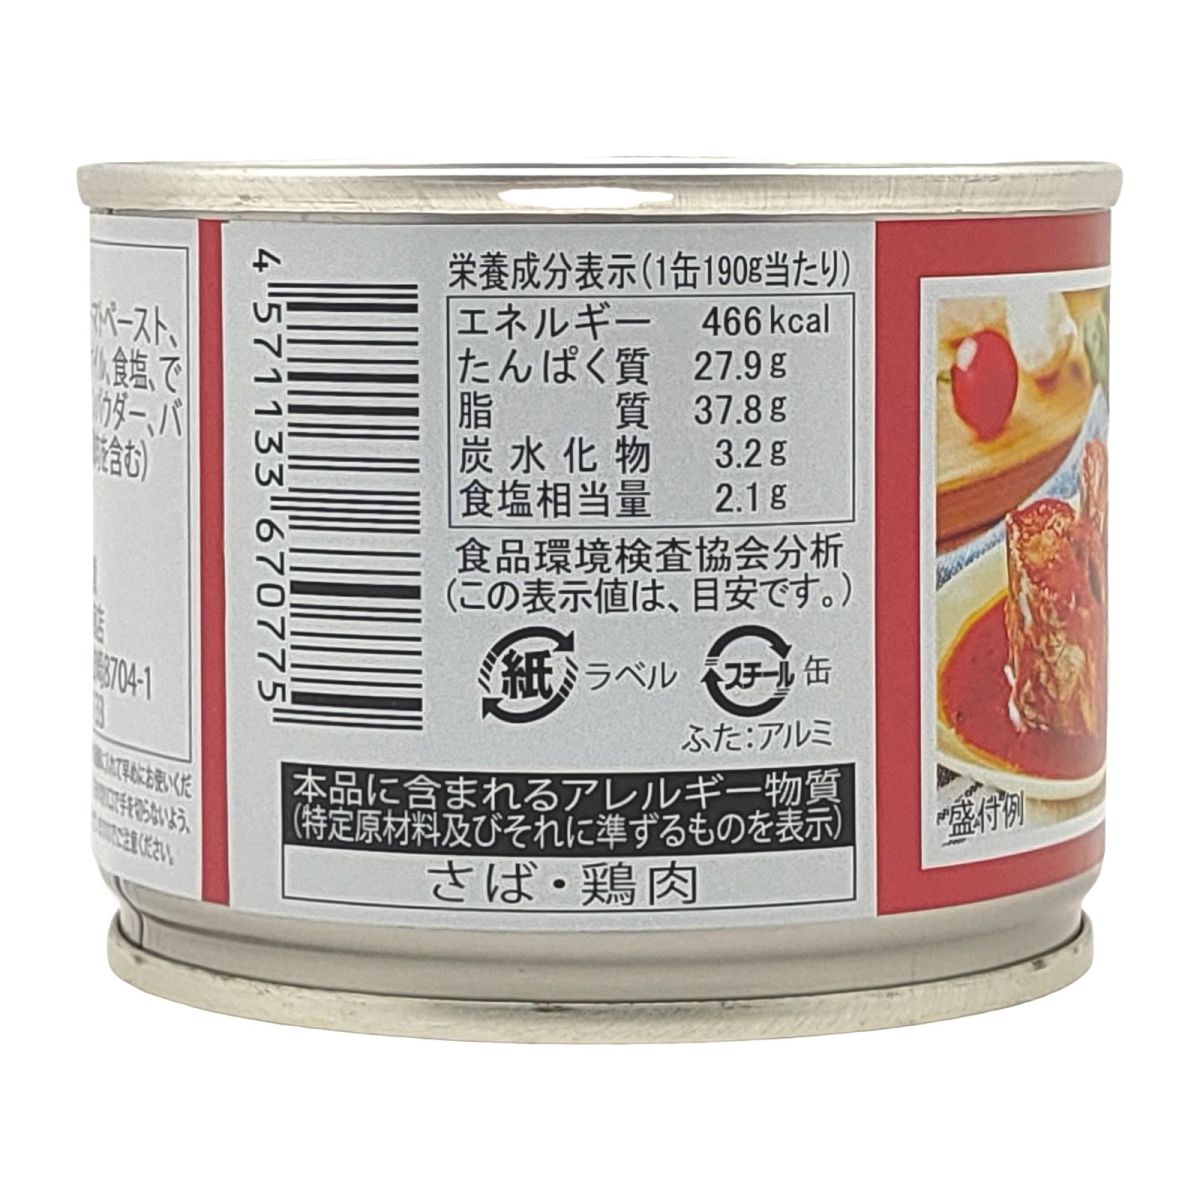 全国ローカル缶詰、ご当地缶詰の専門店 「カンダフル」缶詰通販サイト